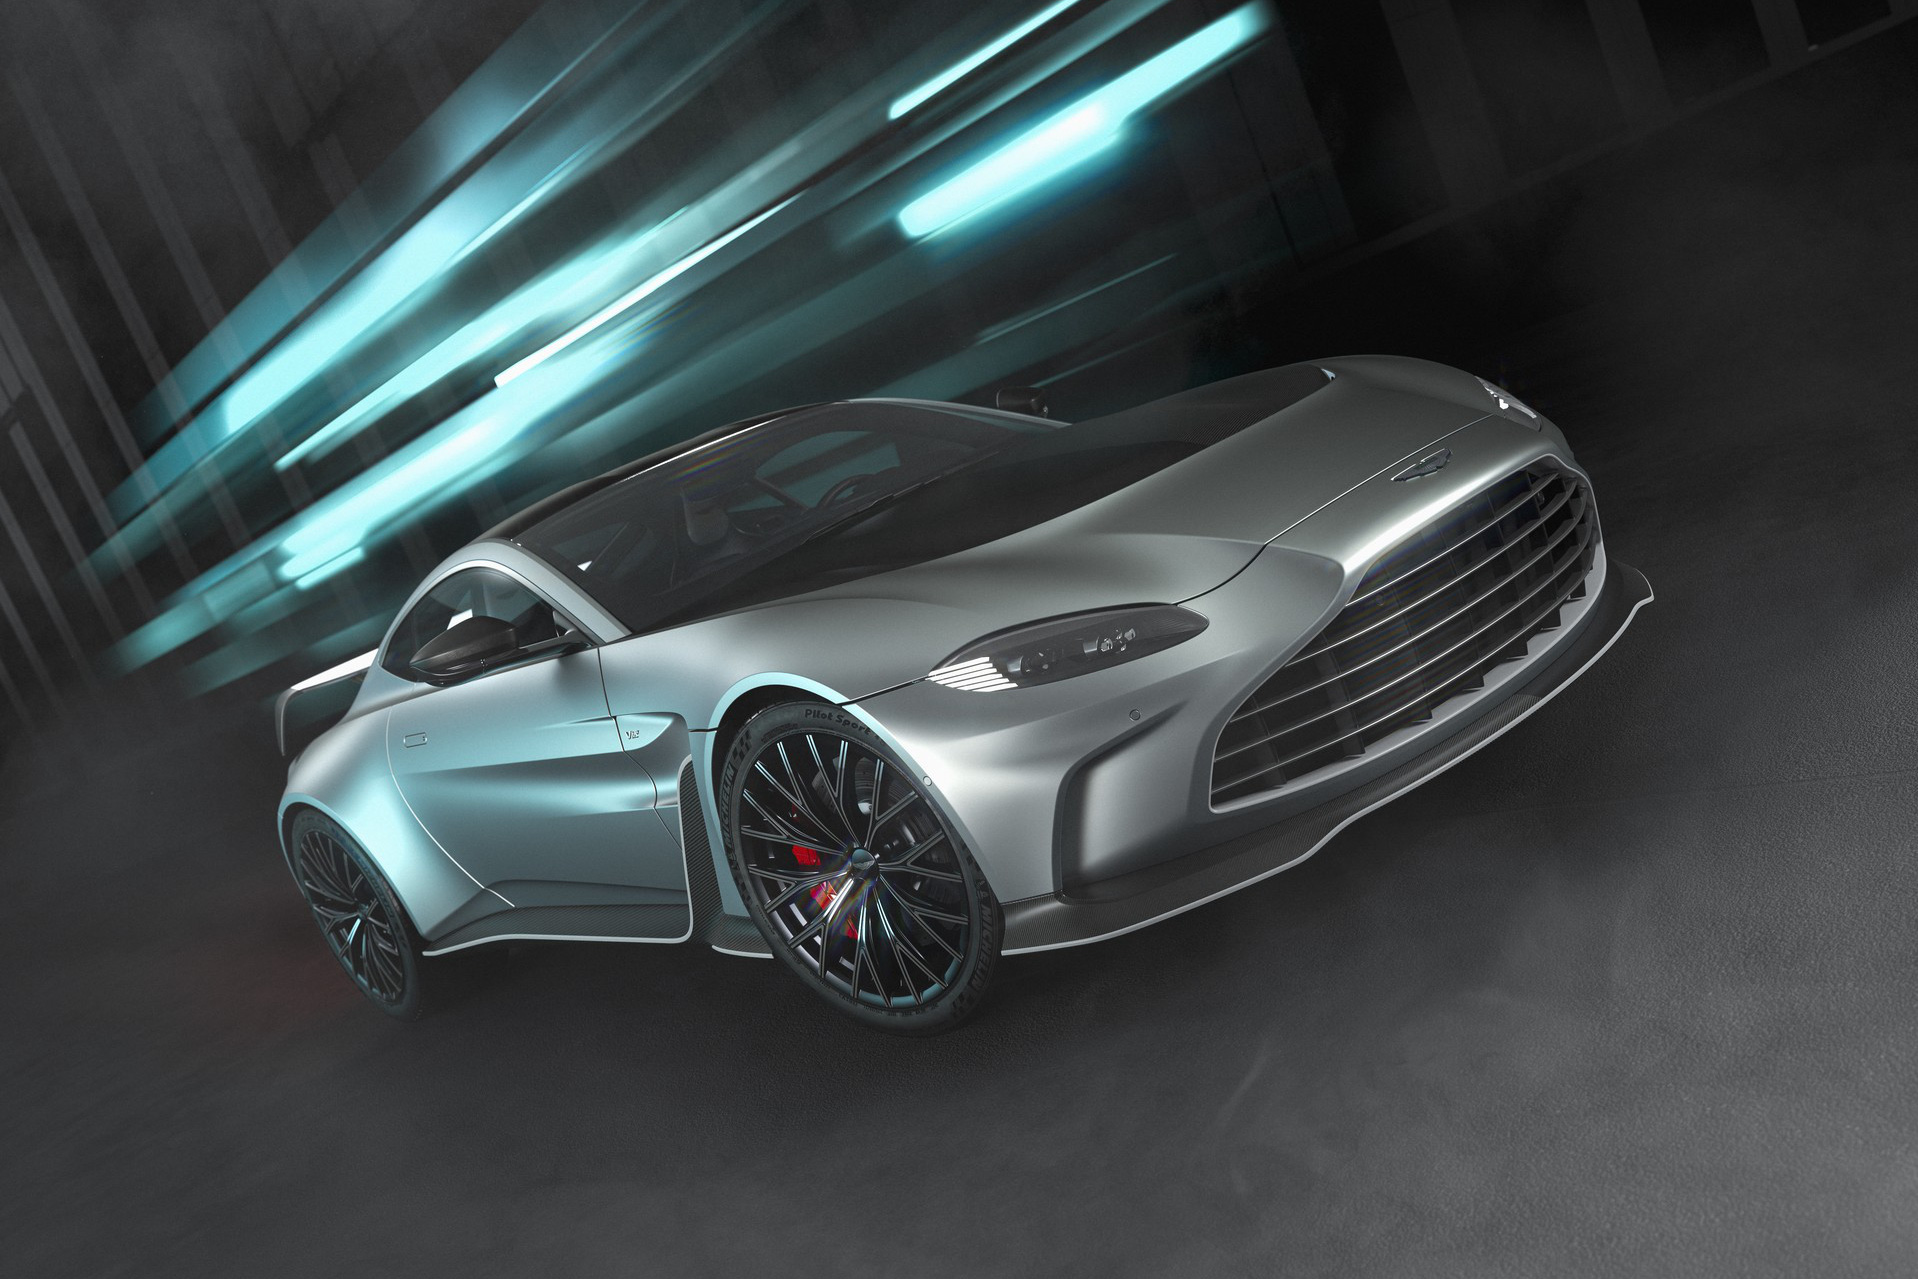 Aston Martin Vantage mạnh nhất lịch sử: 690 mã lực, mất 3,4 giây để đạt 100 km/h, chỉ có 333 xe nhưng đã được mua hết sạch từ khi còn 'trứng nước'